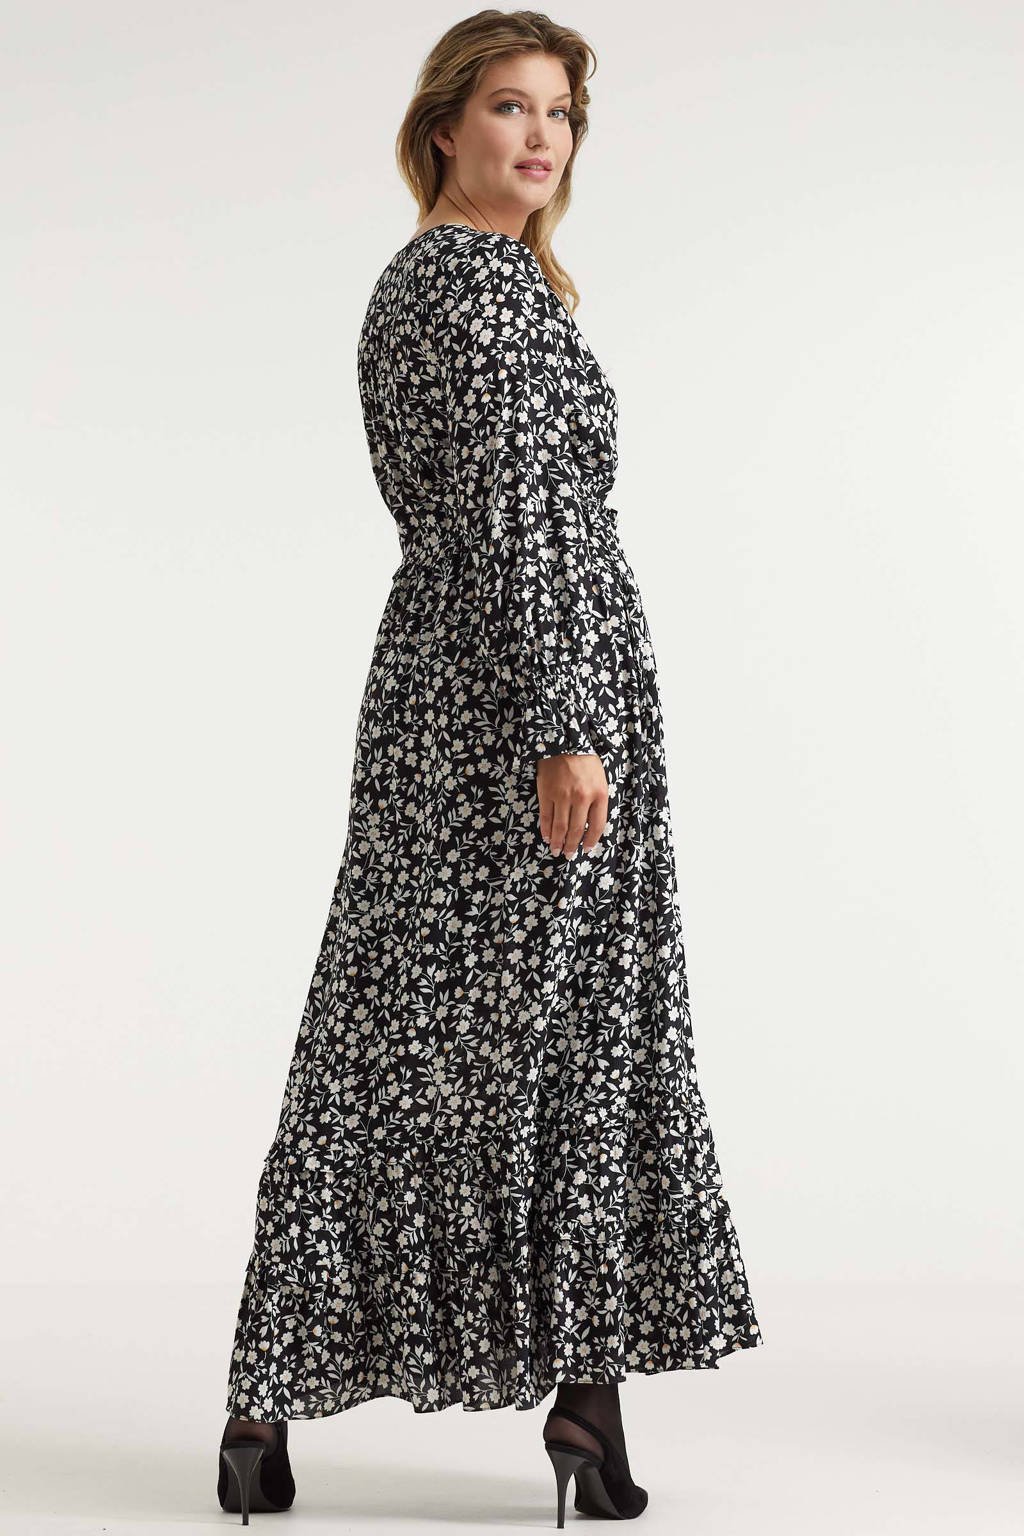 huid partitie Trottoir Miljuschka by Wehkamp maxi jurk met mini bloemenprint zwart/wit | wehkamp